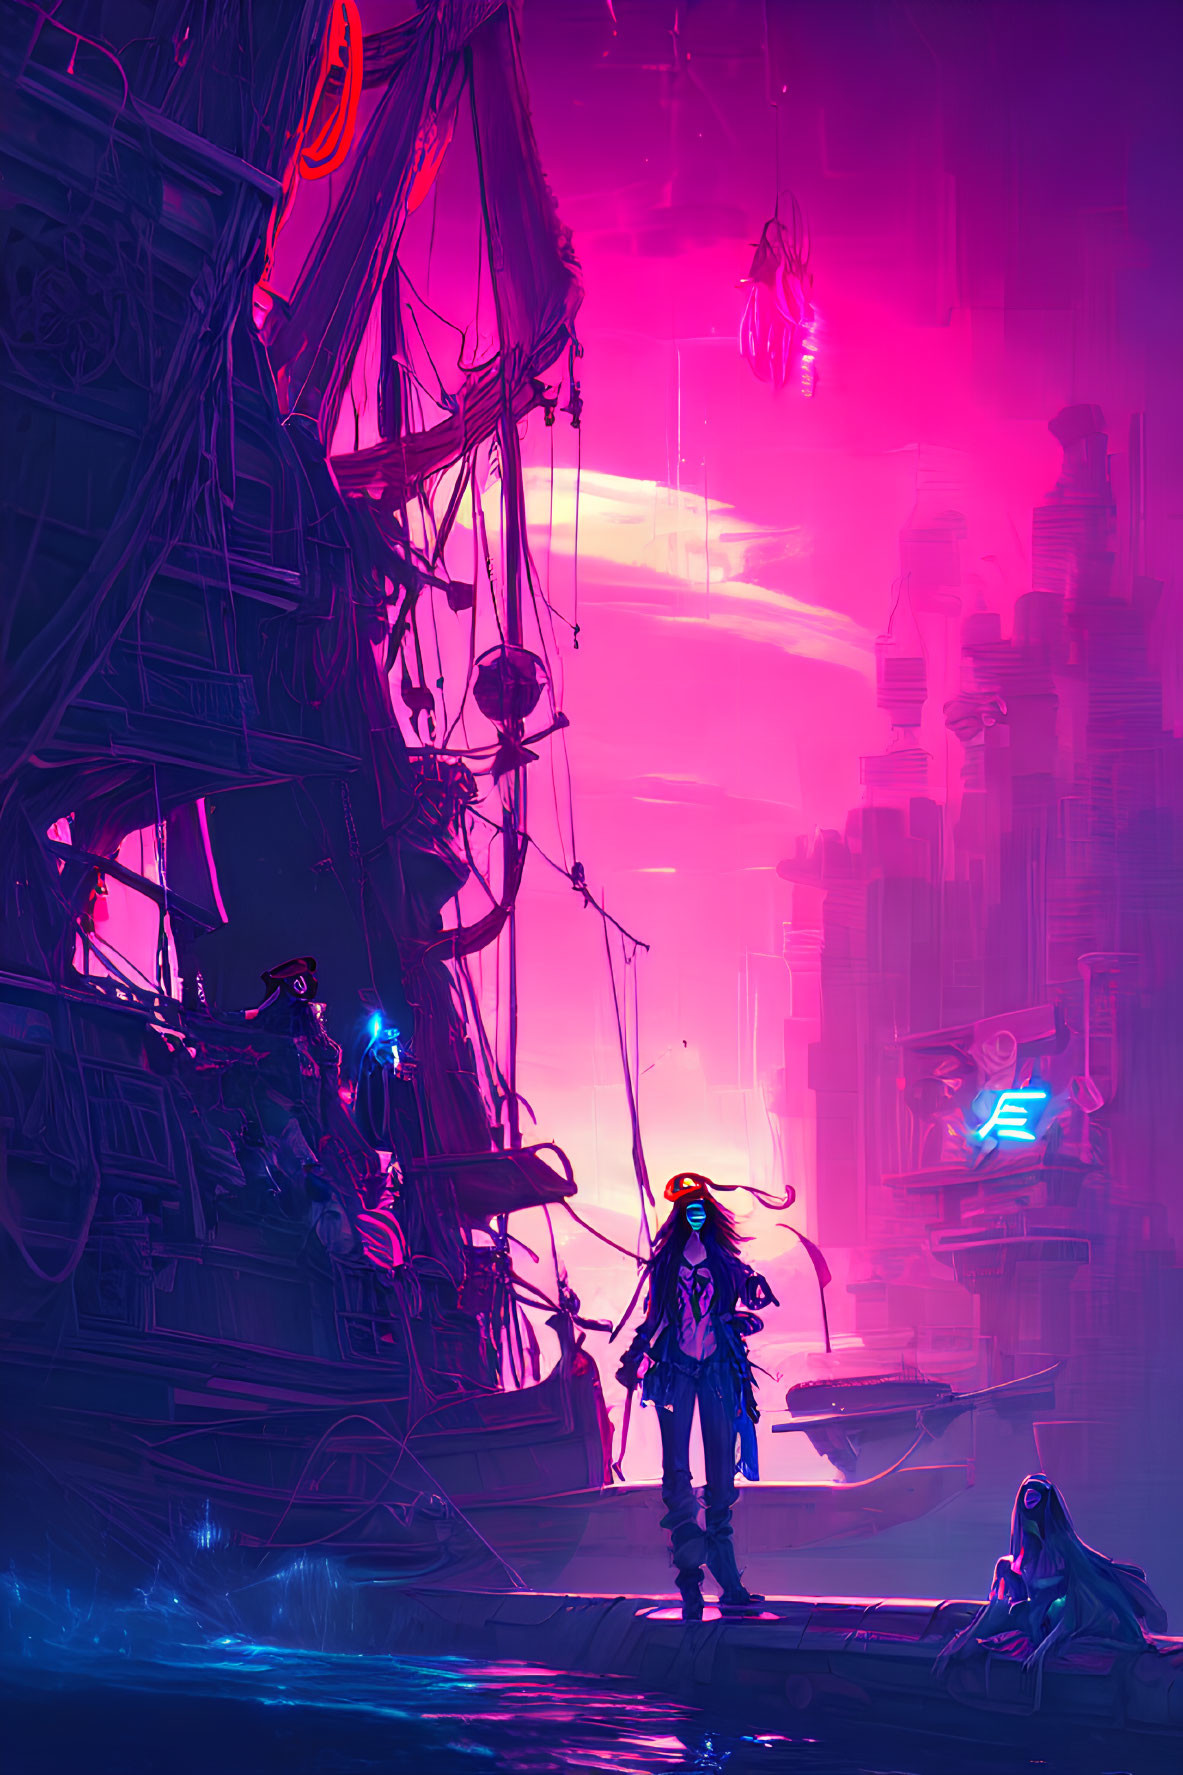 Futuristic pirate scene with neon lights and cityscape in purple haze